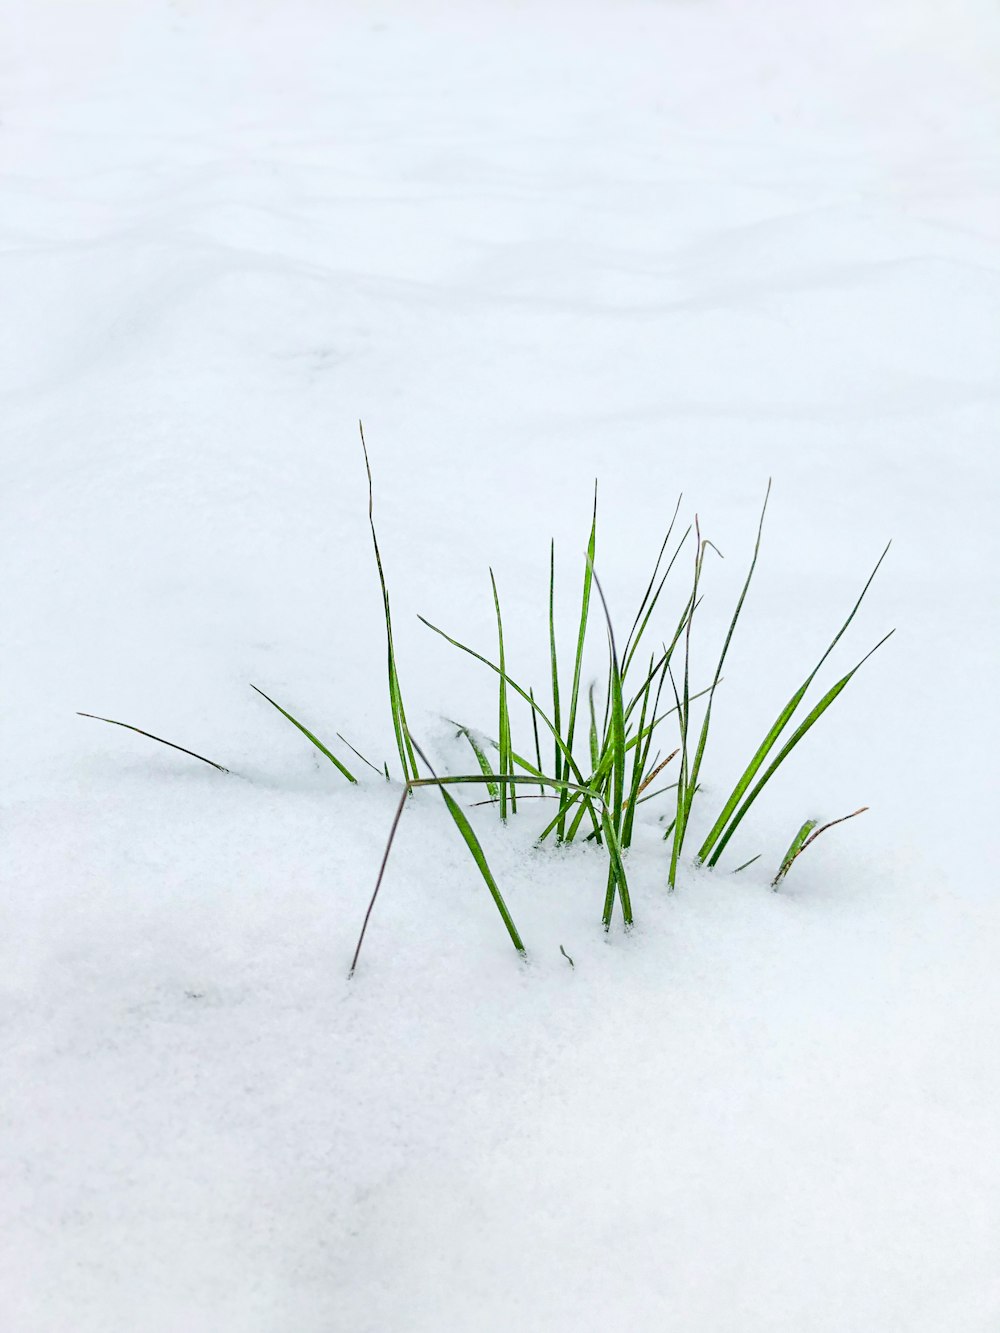 green grass on white snow